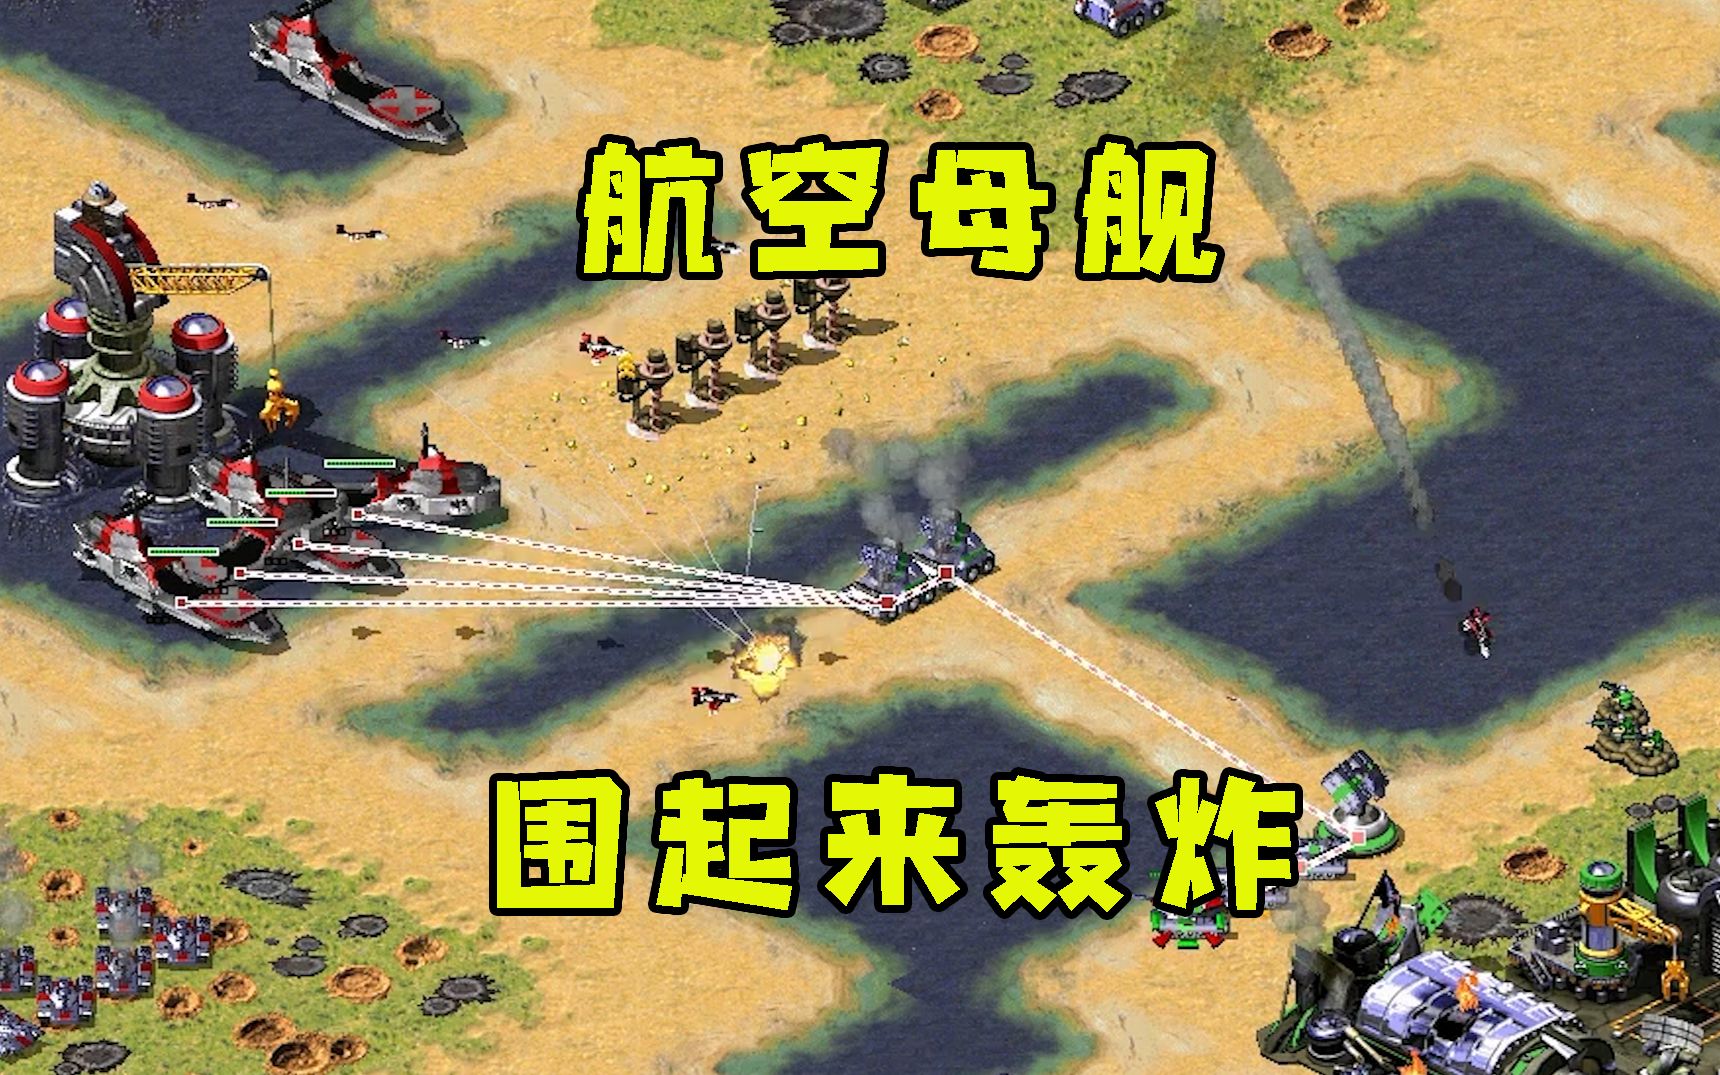 《红警3》首批截图放出 _ 游民星空 GamerSky.com